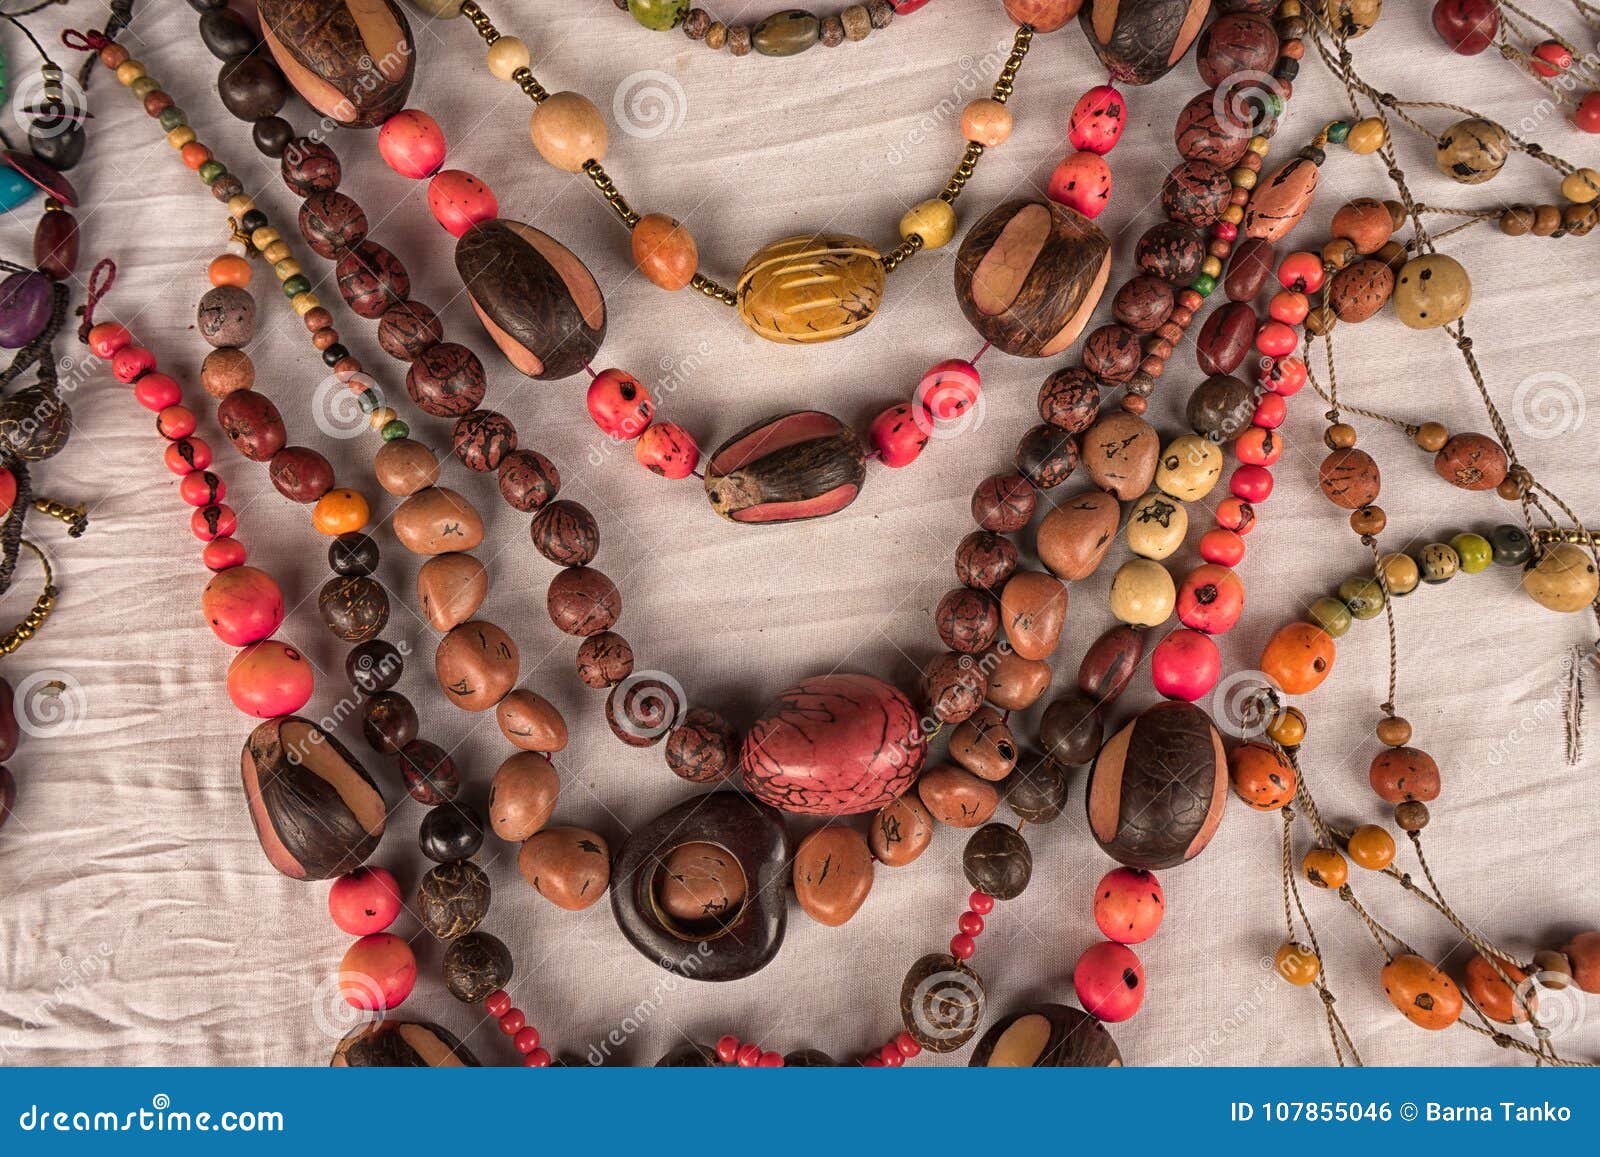 Collares Indígenas Hechos De Semillas En Ecuador de archivo - de exterior, 107855046